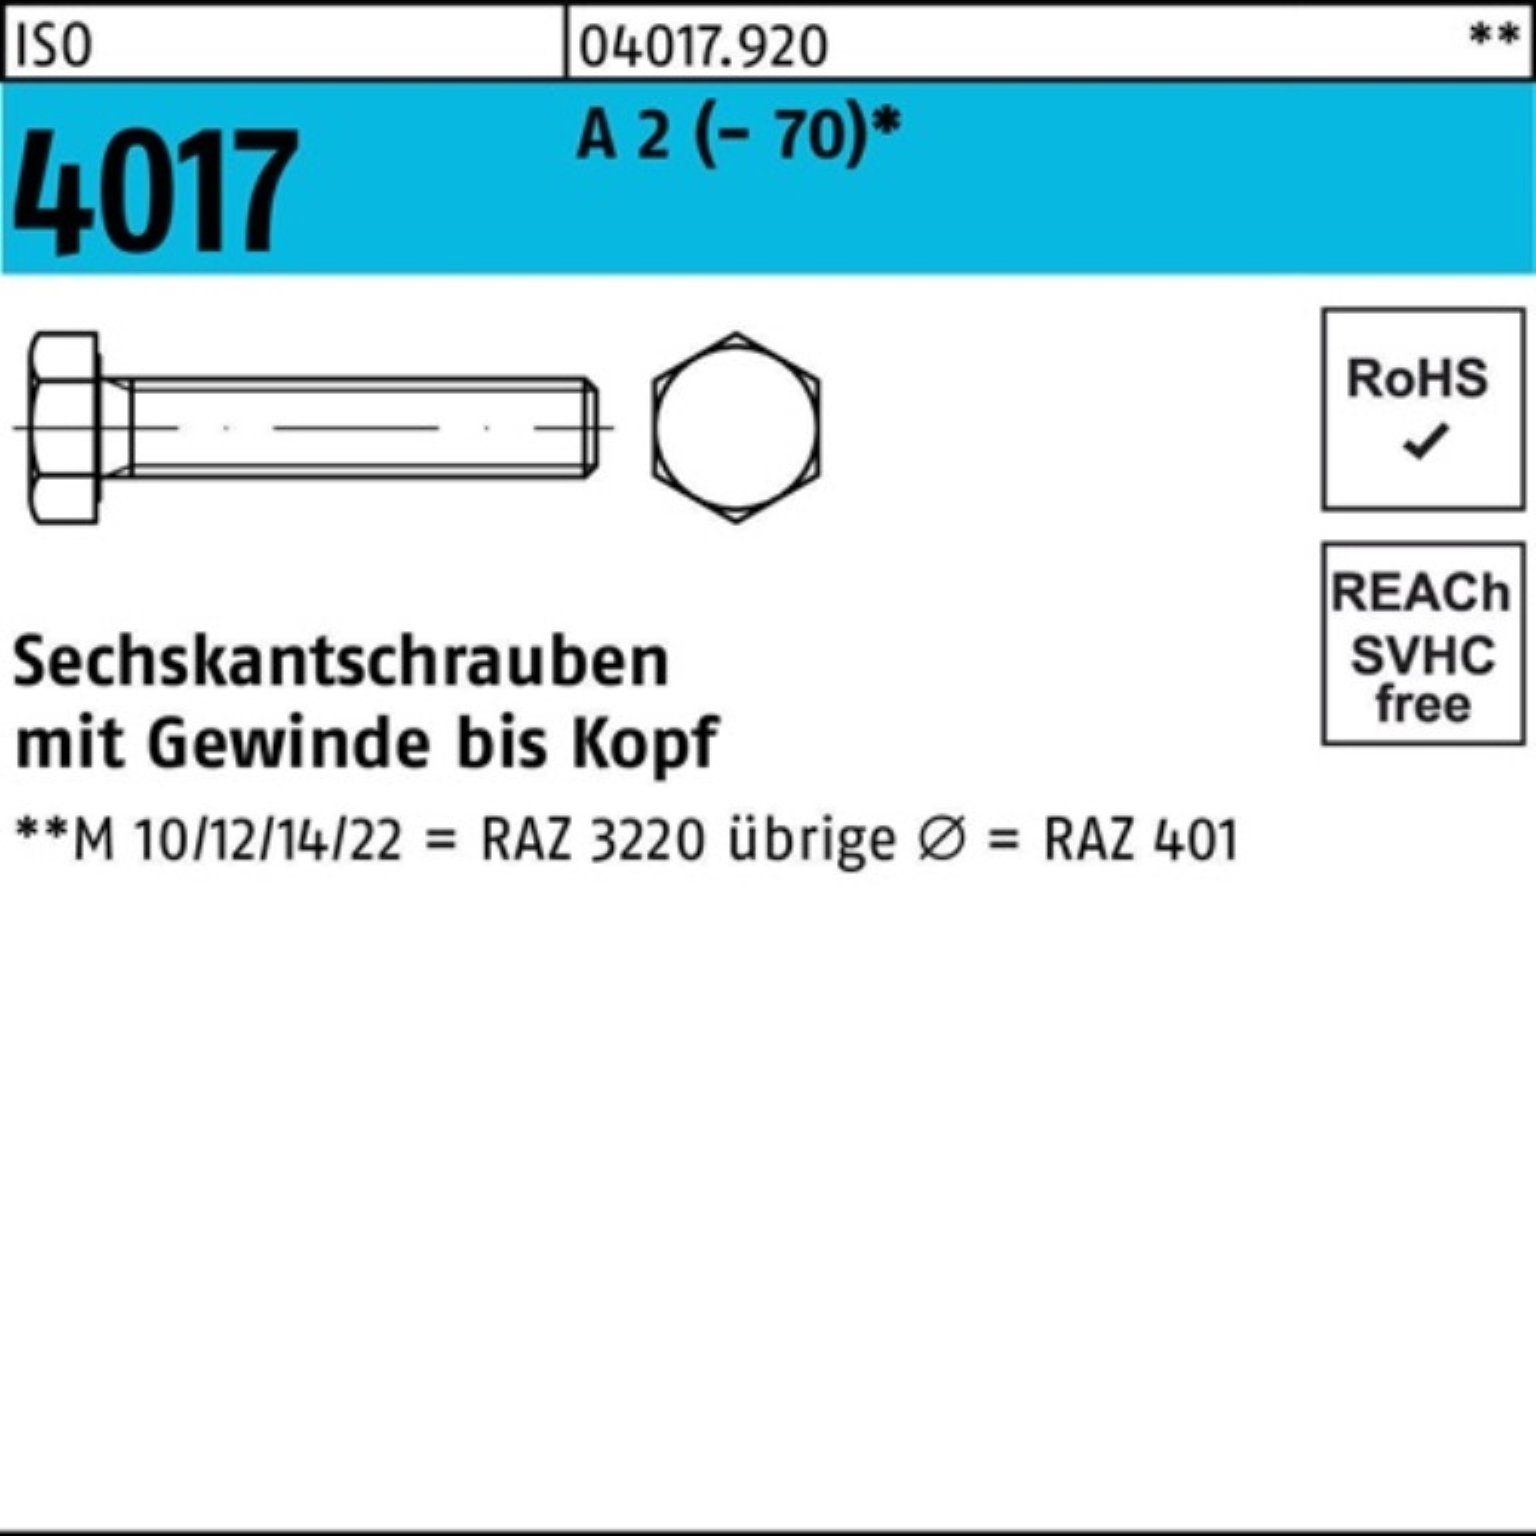 Bufab Sechskantschraube 100er Pack Sechskantschraube ISO 4017 VG M36x 100 A 2 (70) 1 Stück